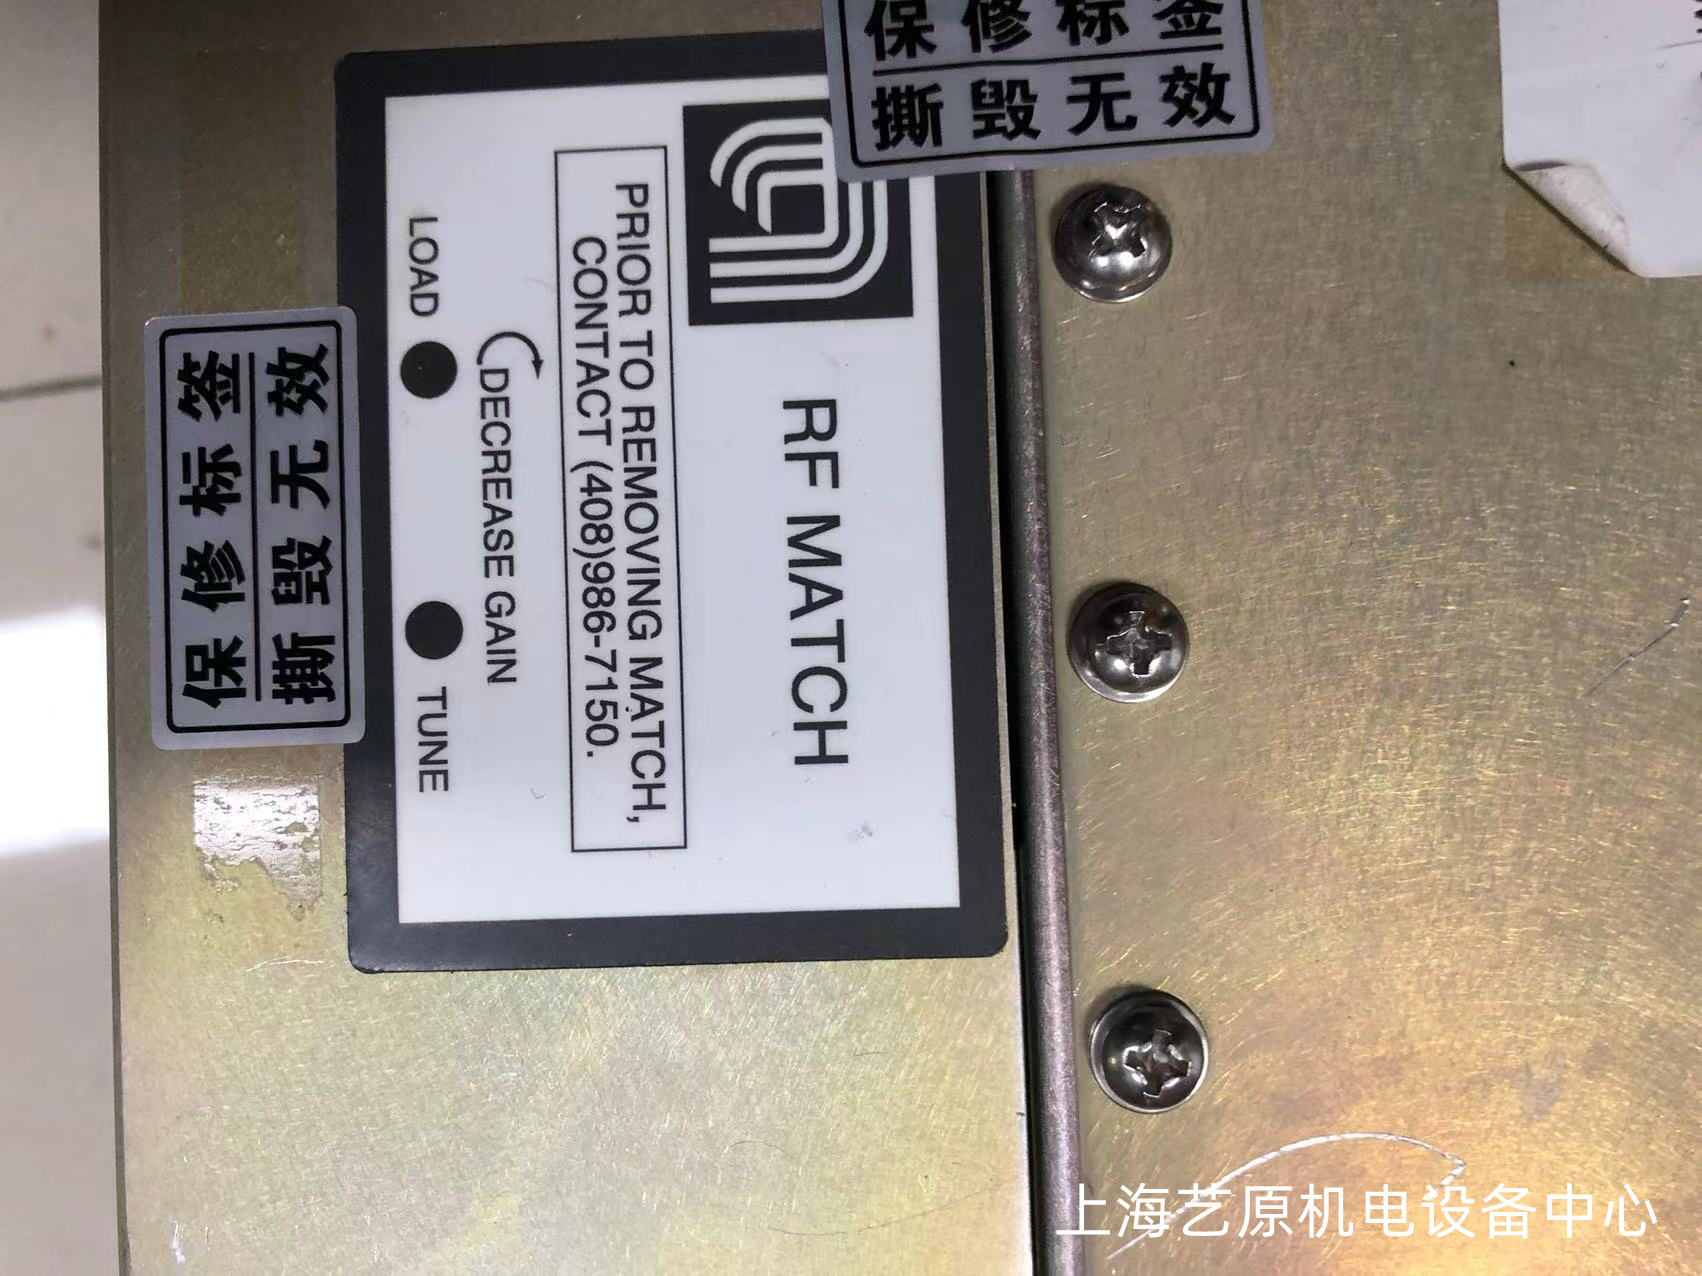 温州RF MATCH 0010-36408维修 修复率可达95% 服务好